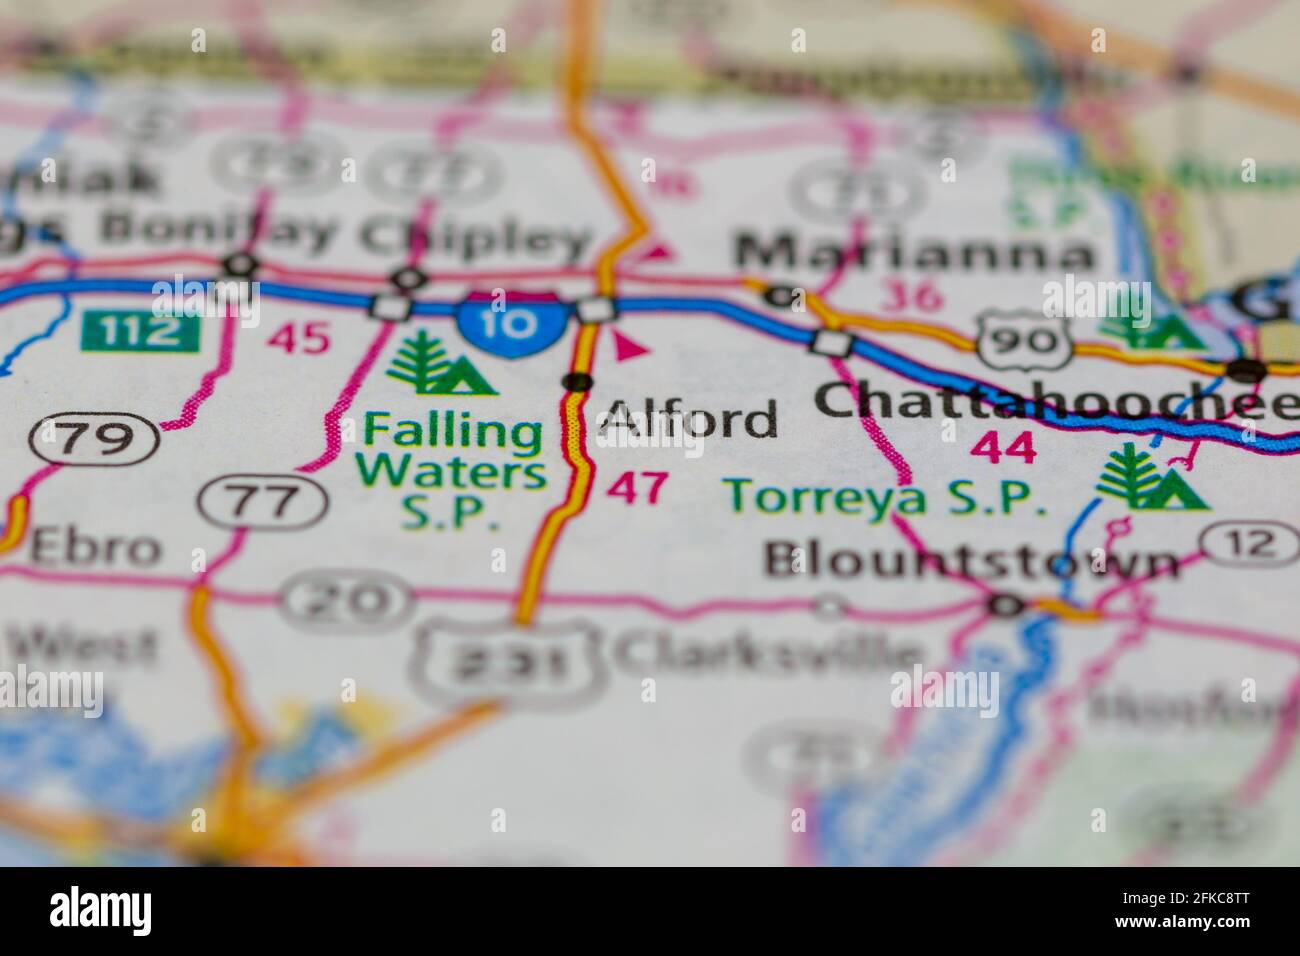 Alford Florida USA mostrato su una mappa geografica o su una strada mappa Foto Stock